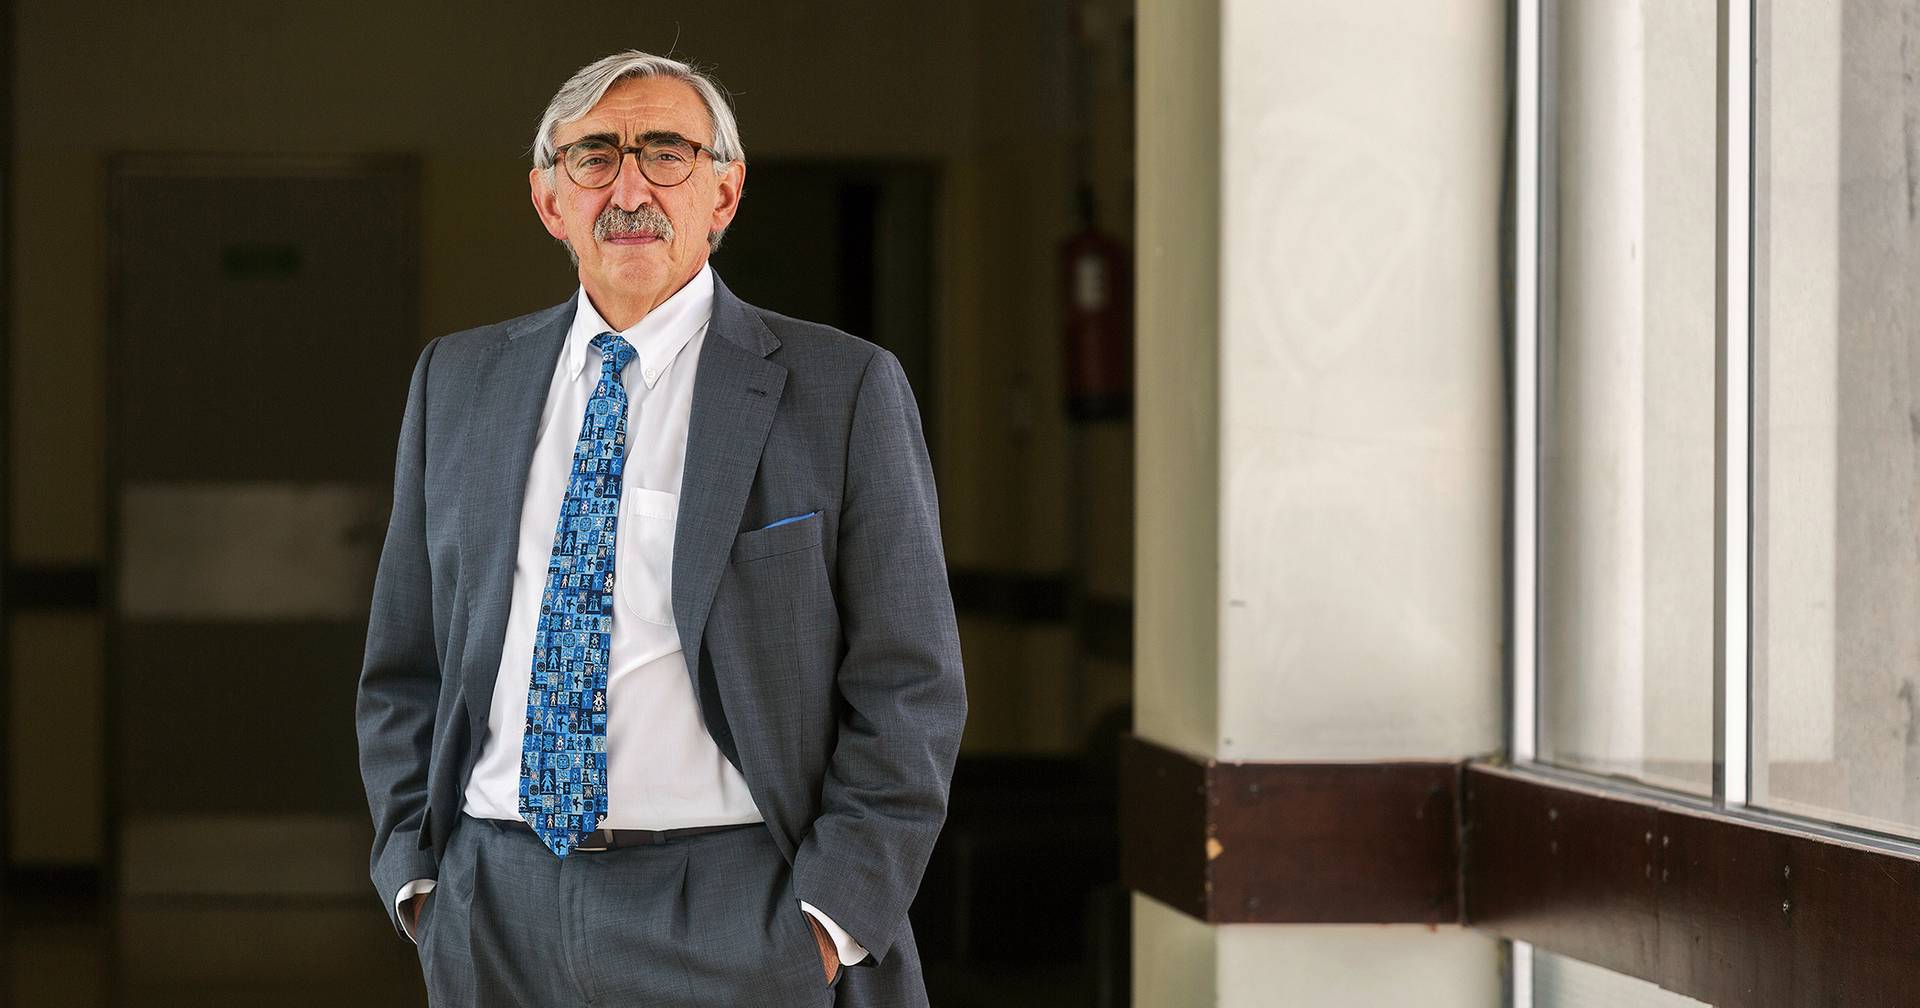 José Fragata, médico-cirurgião e professor universitário: “O SNS está preso pela ideologia política”